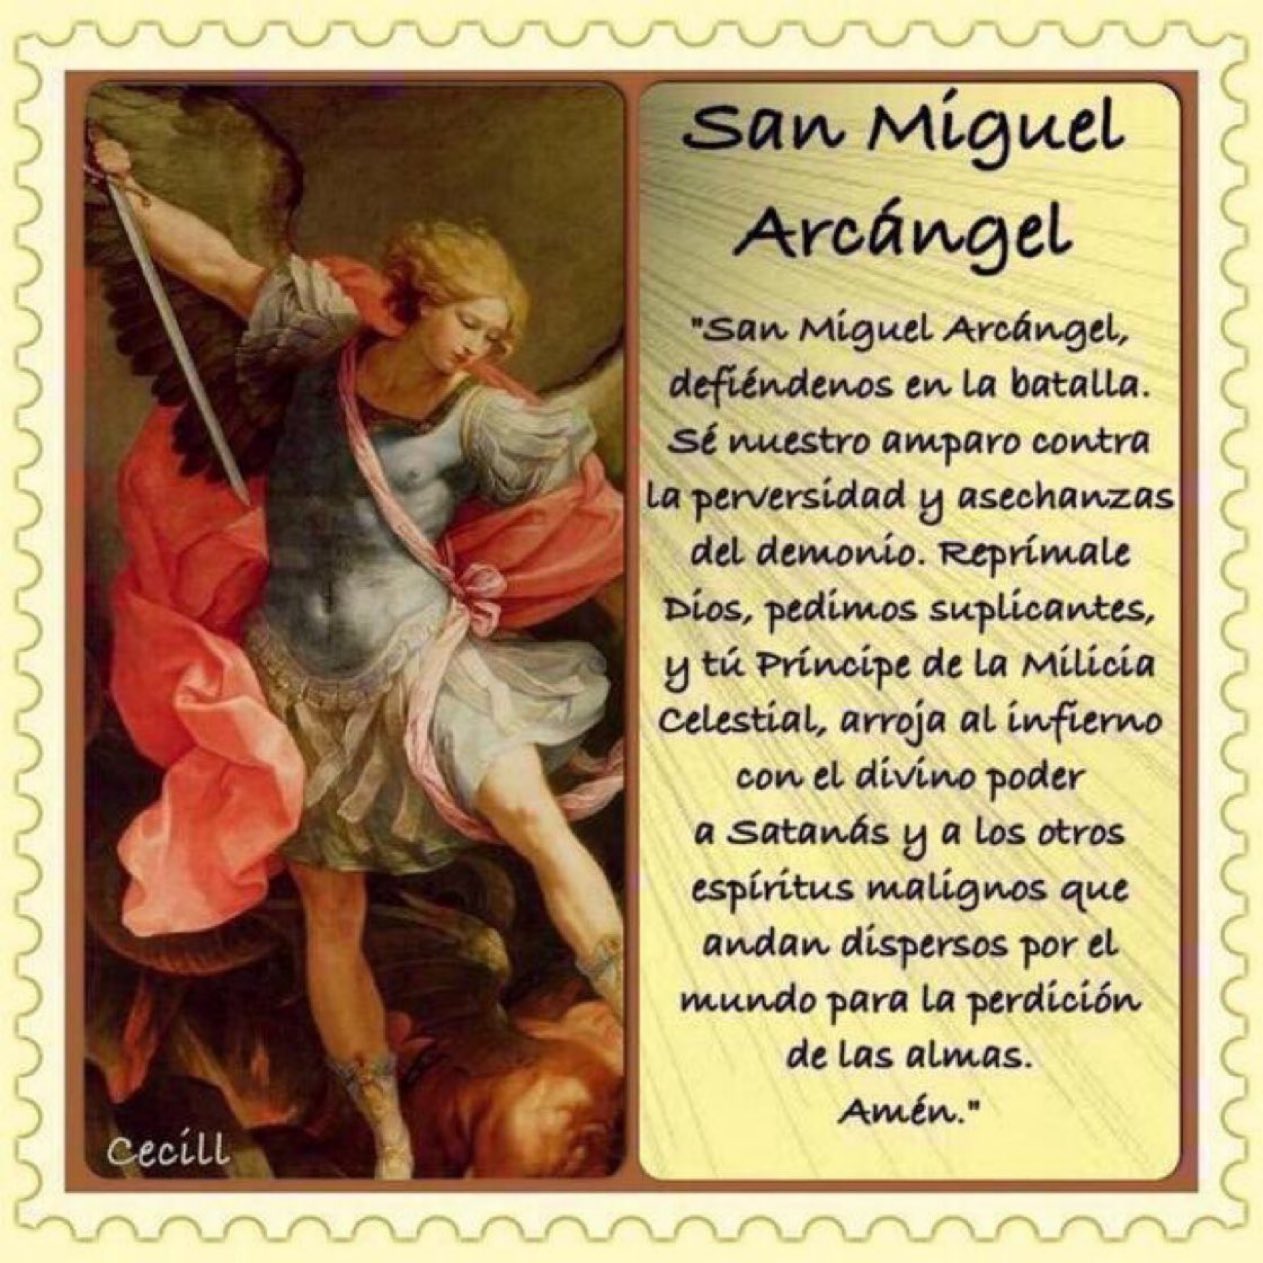 MAGA MANUELA - San Miguel Arcángel